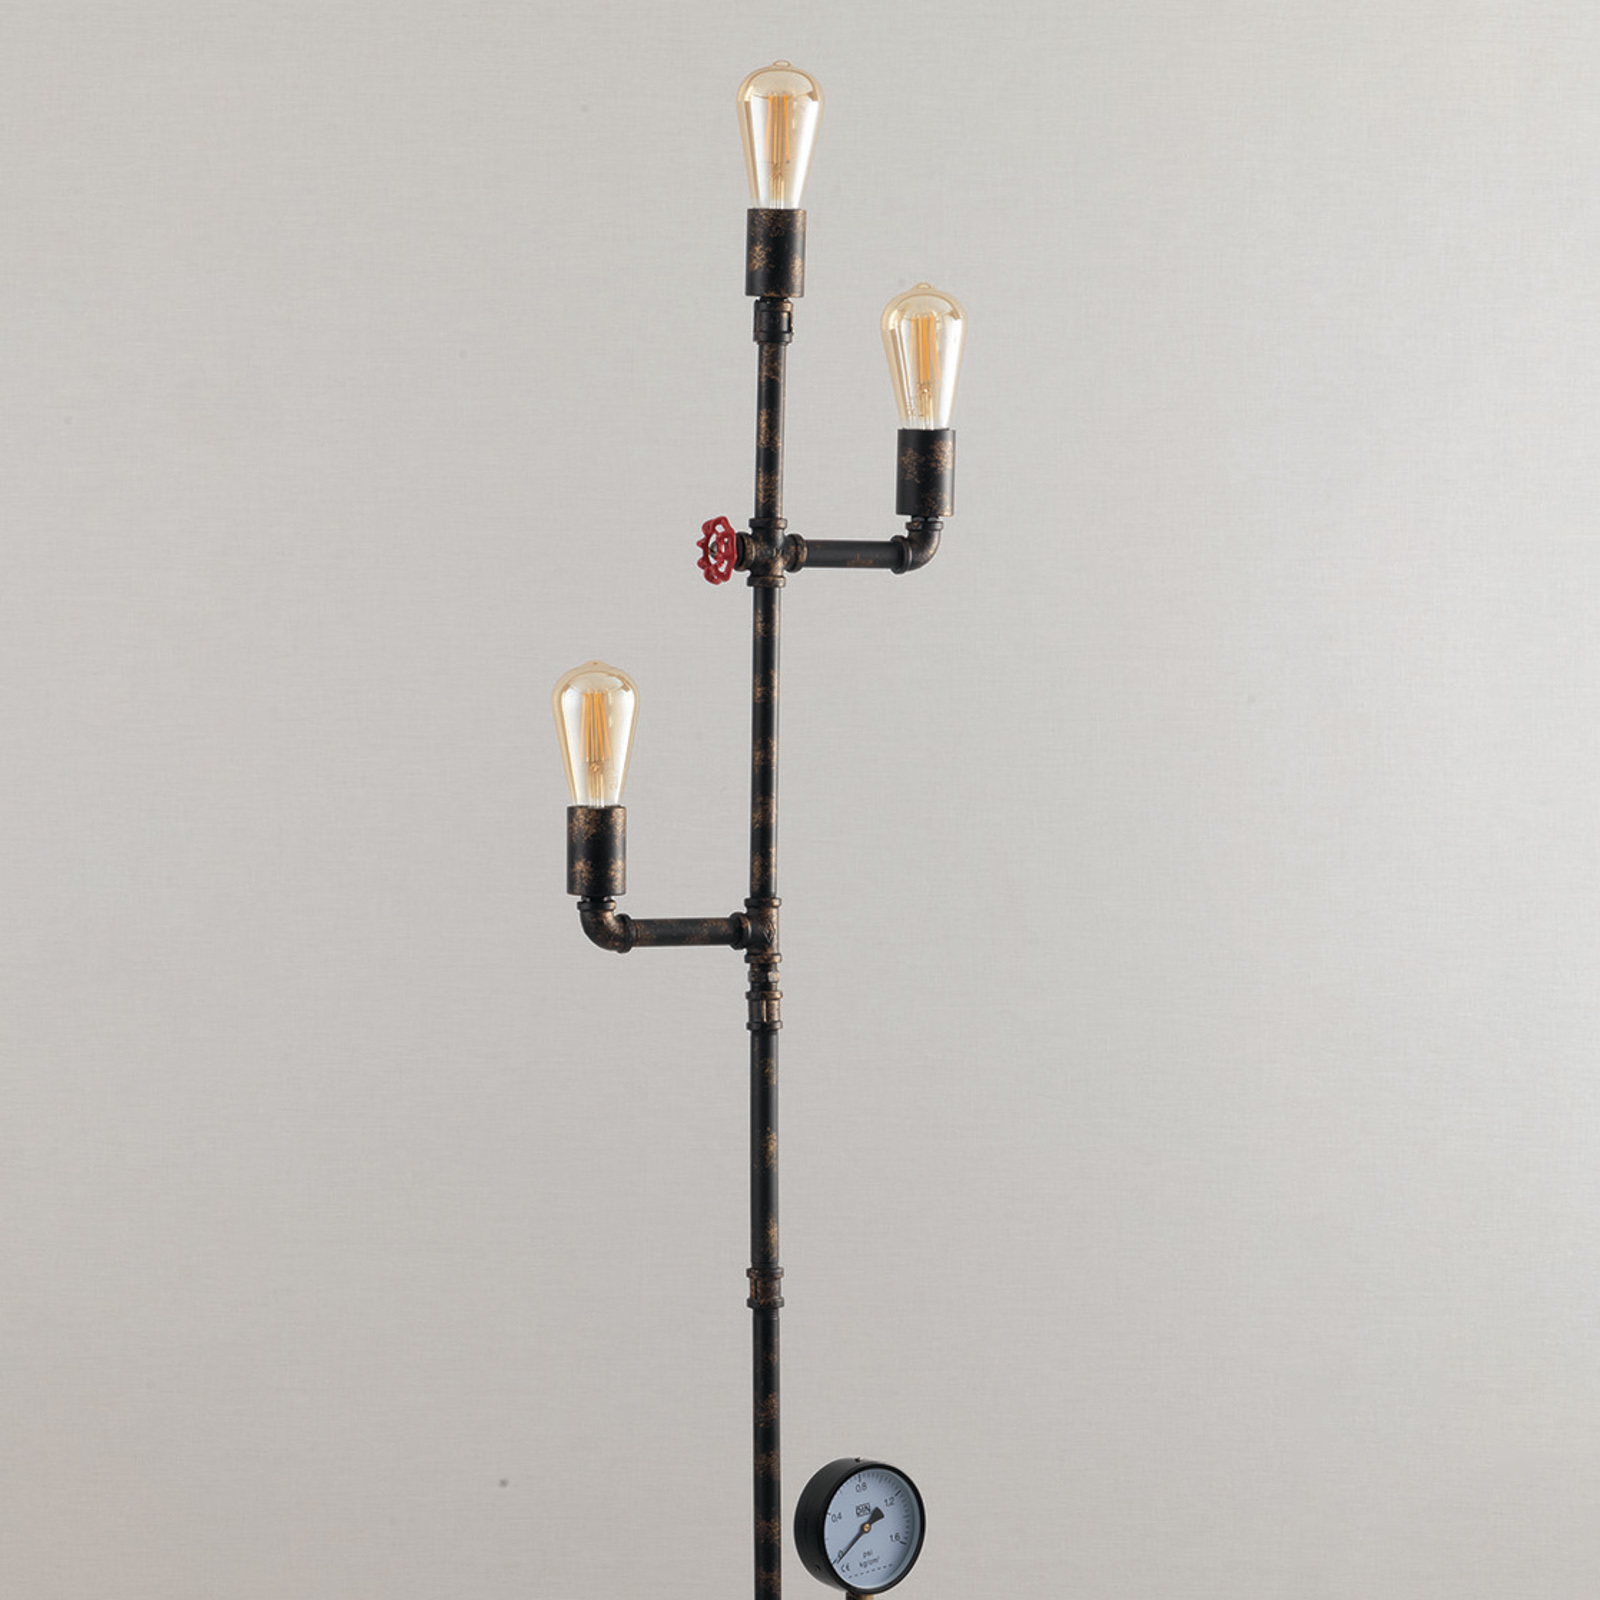 Lampa stojąca Amarcord rdzawo-brązowa trzypunktowa